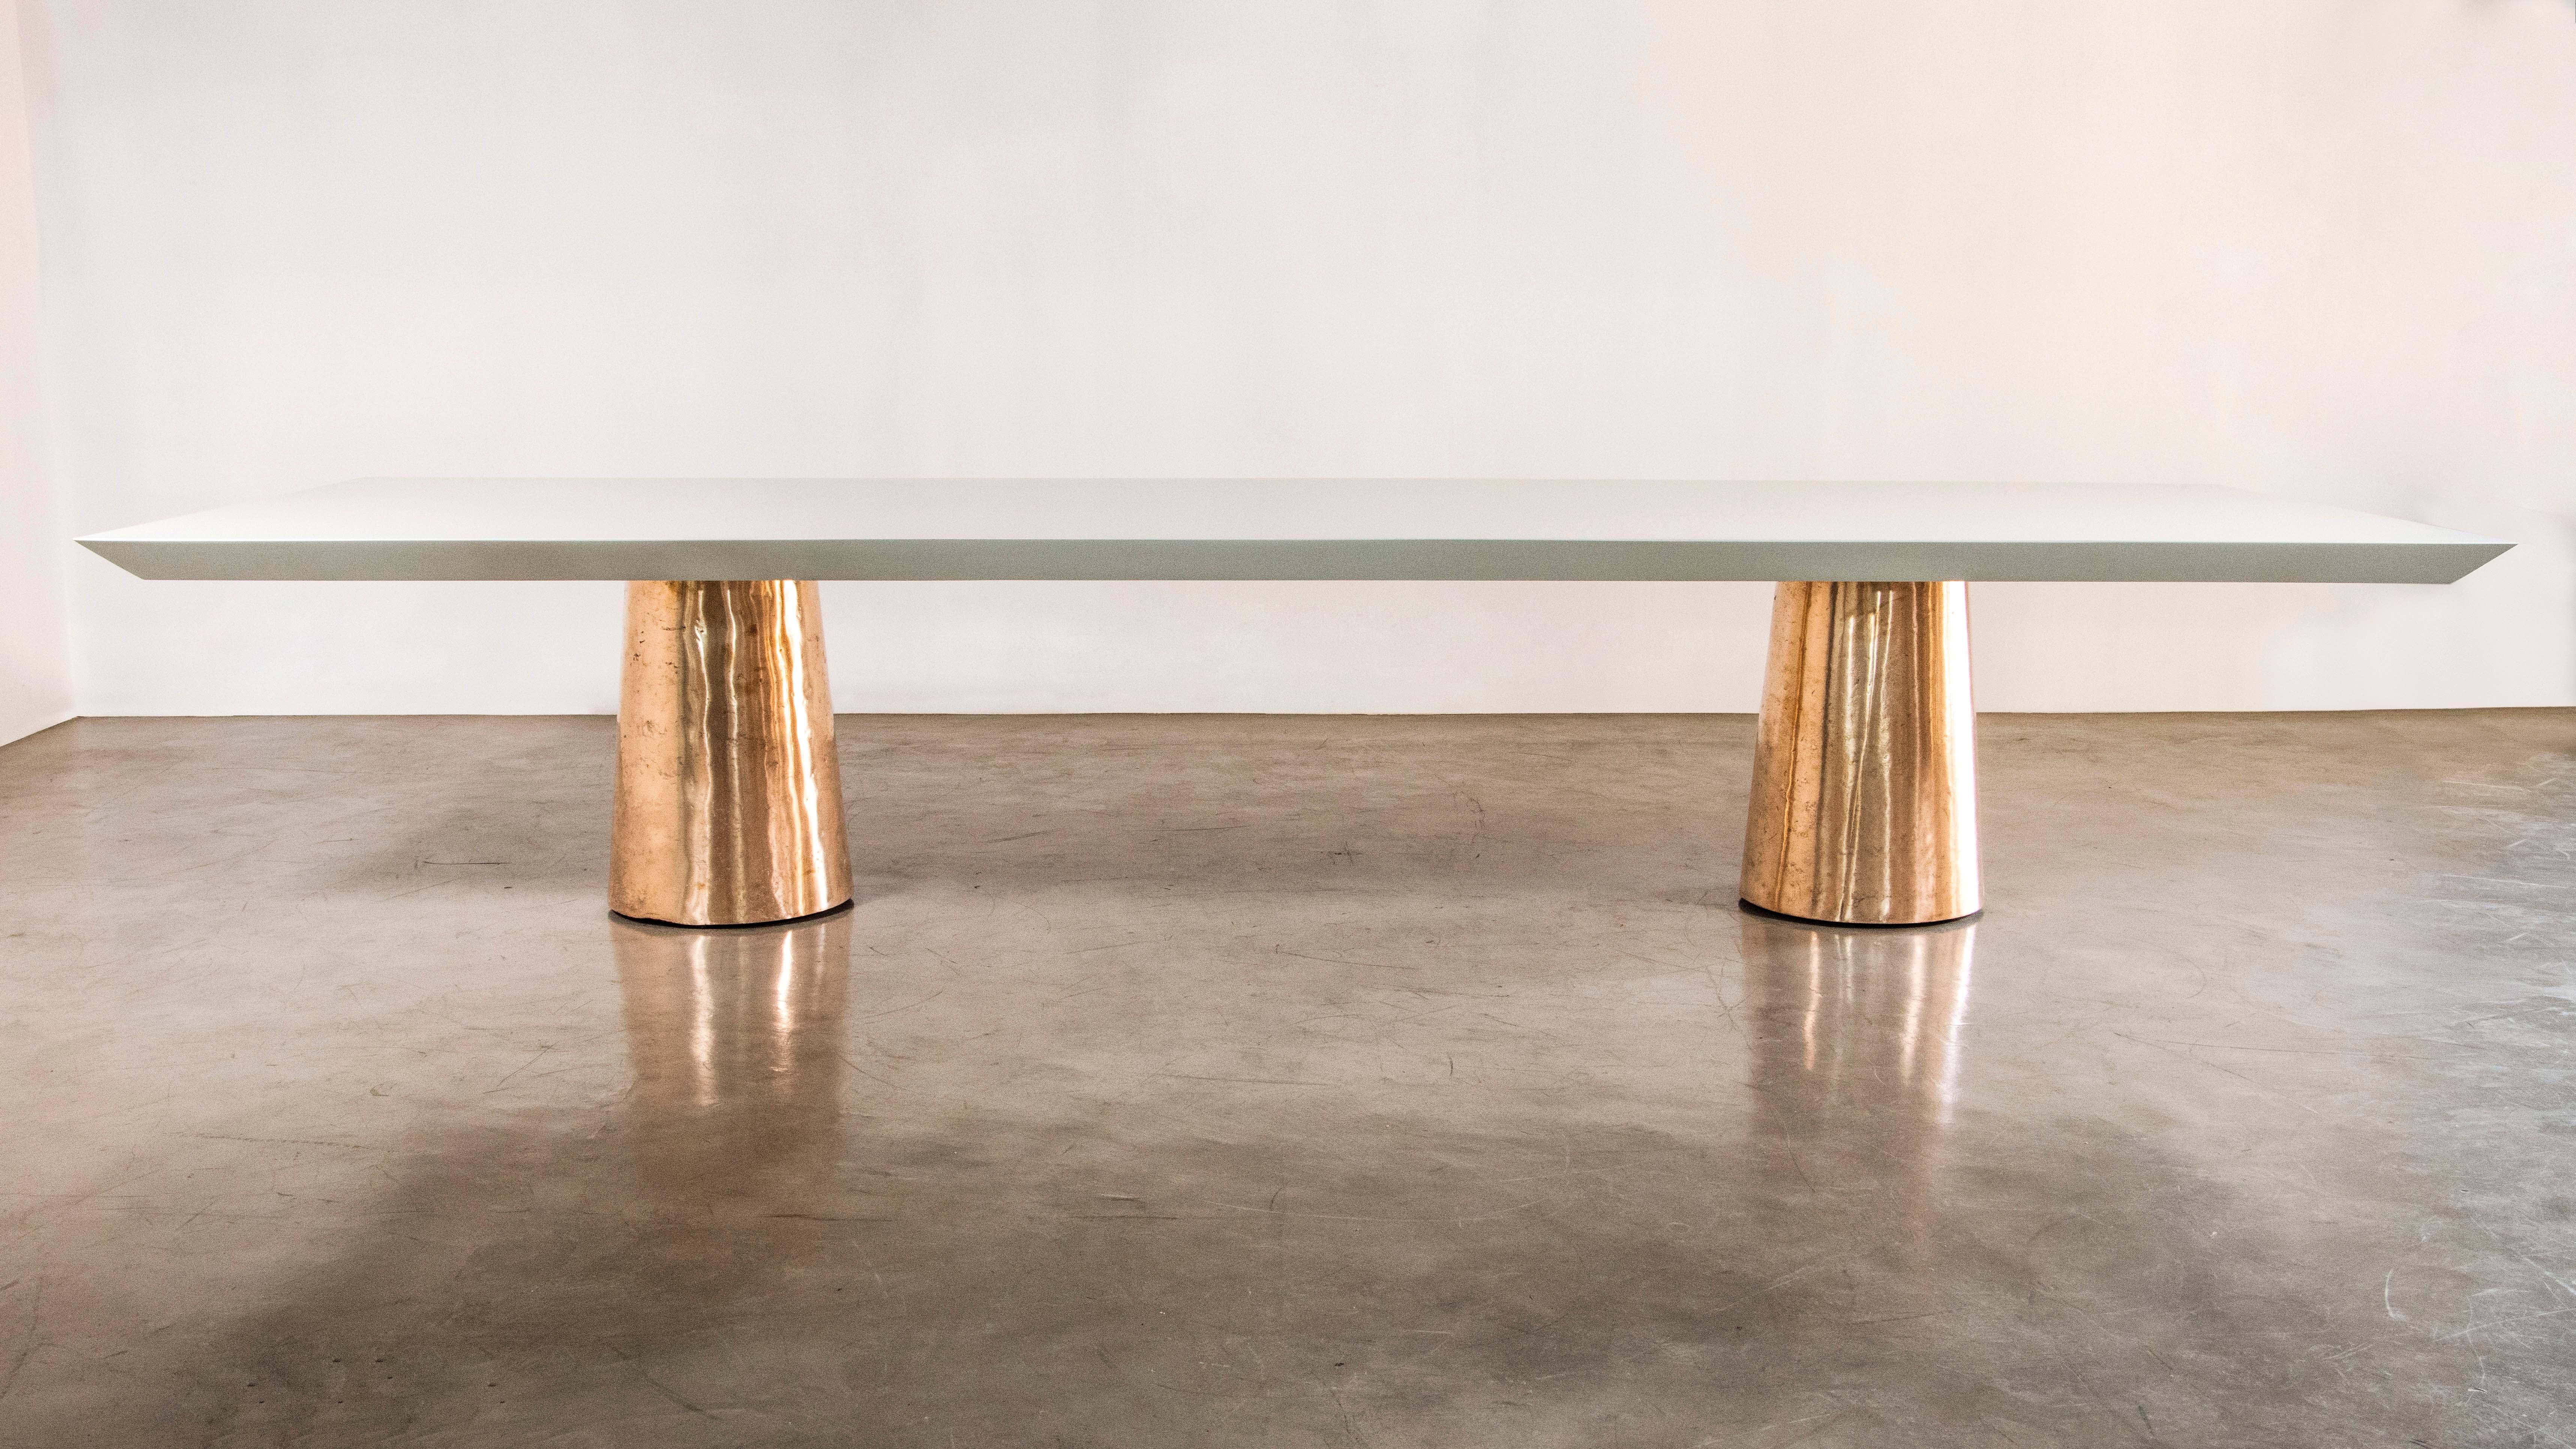 La table Benino se compose de deux bases en bronze moulé poli et d'un plateau en bois laqué à bords tranchants.  Disponible également avec un plateau en pierre ou en bois naturel, et dans toutes les dimensions et finitions.  

Les dimensions sont